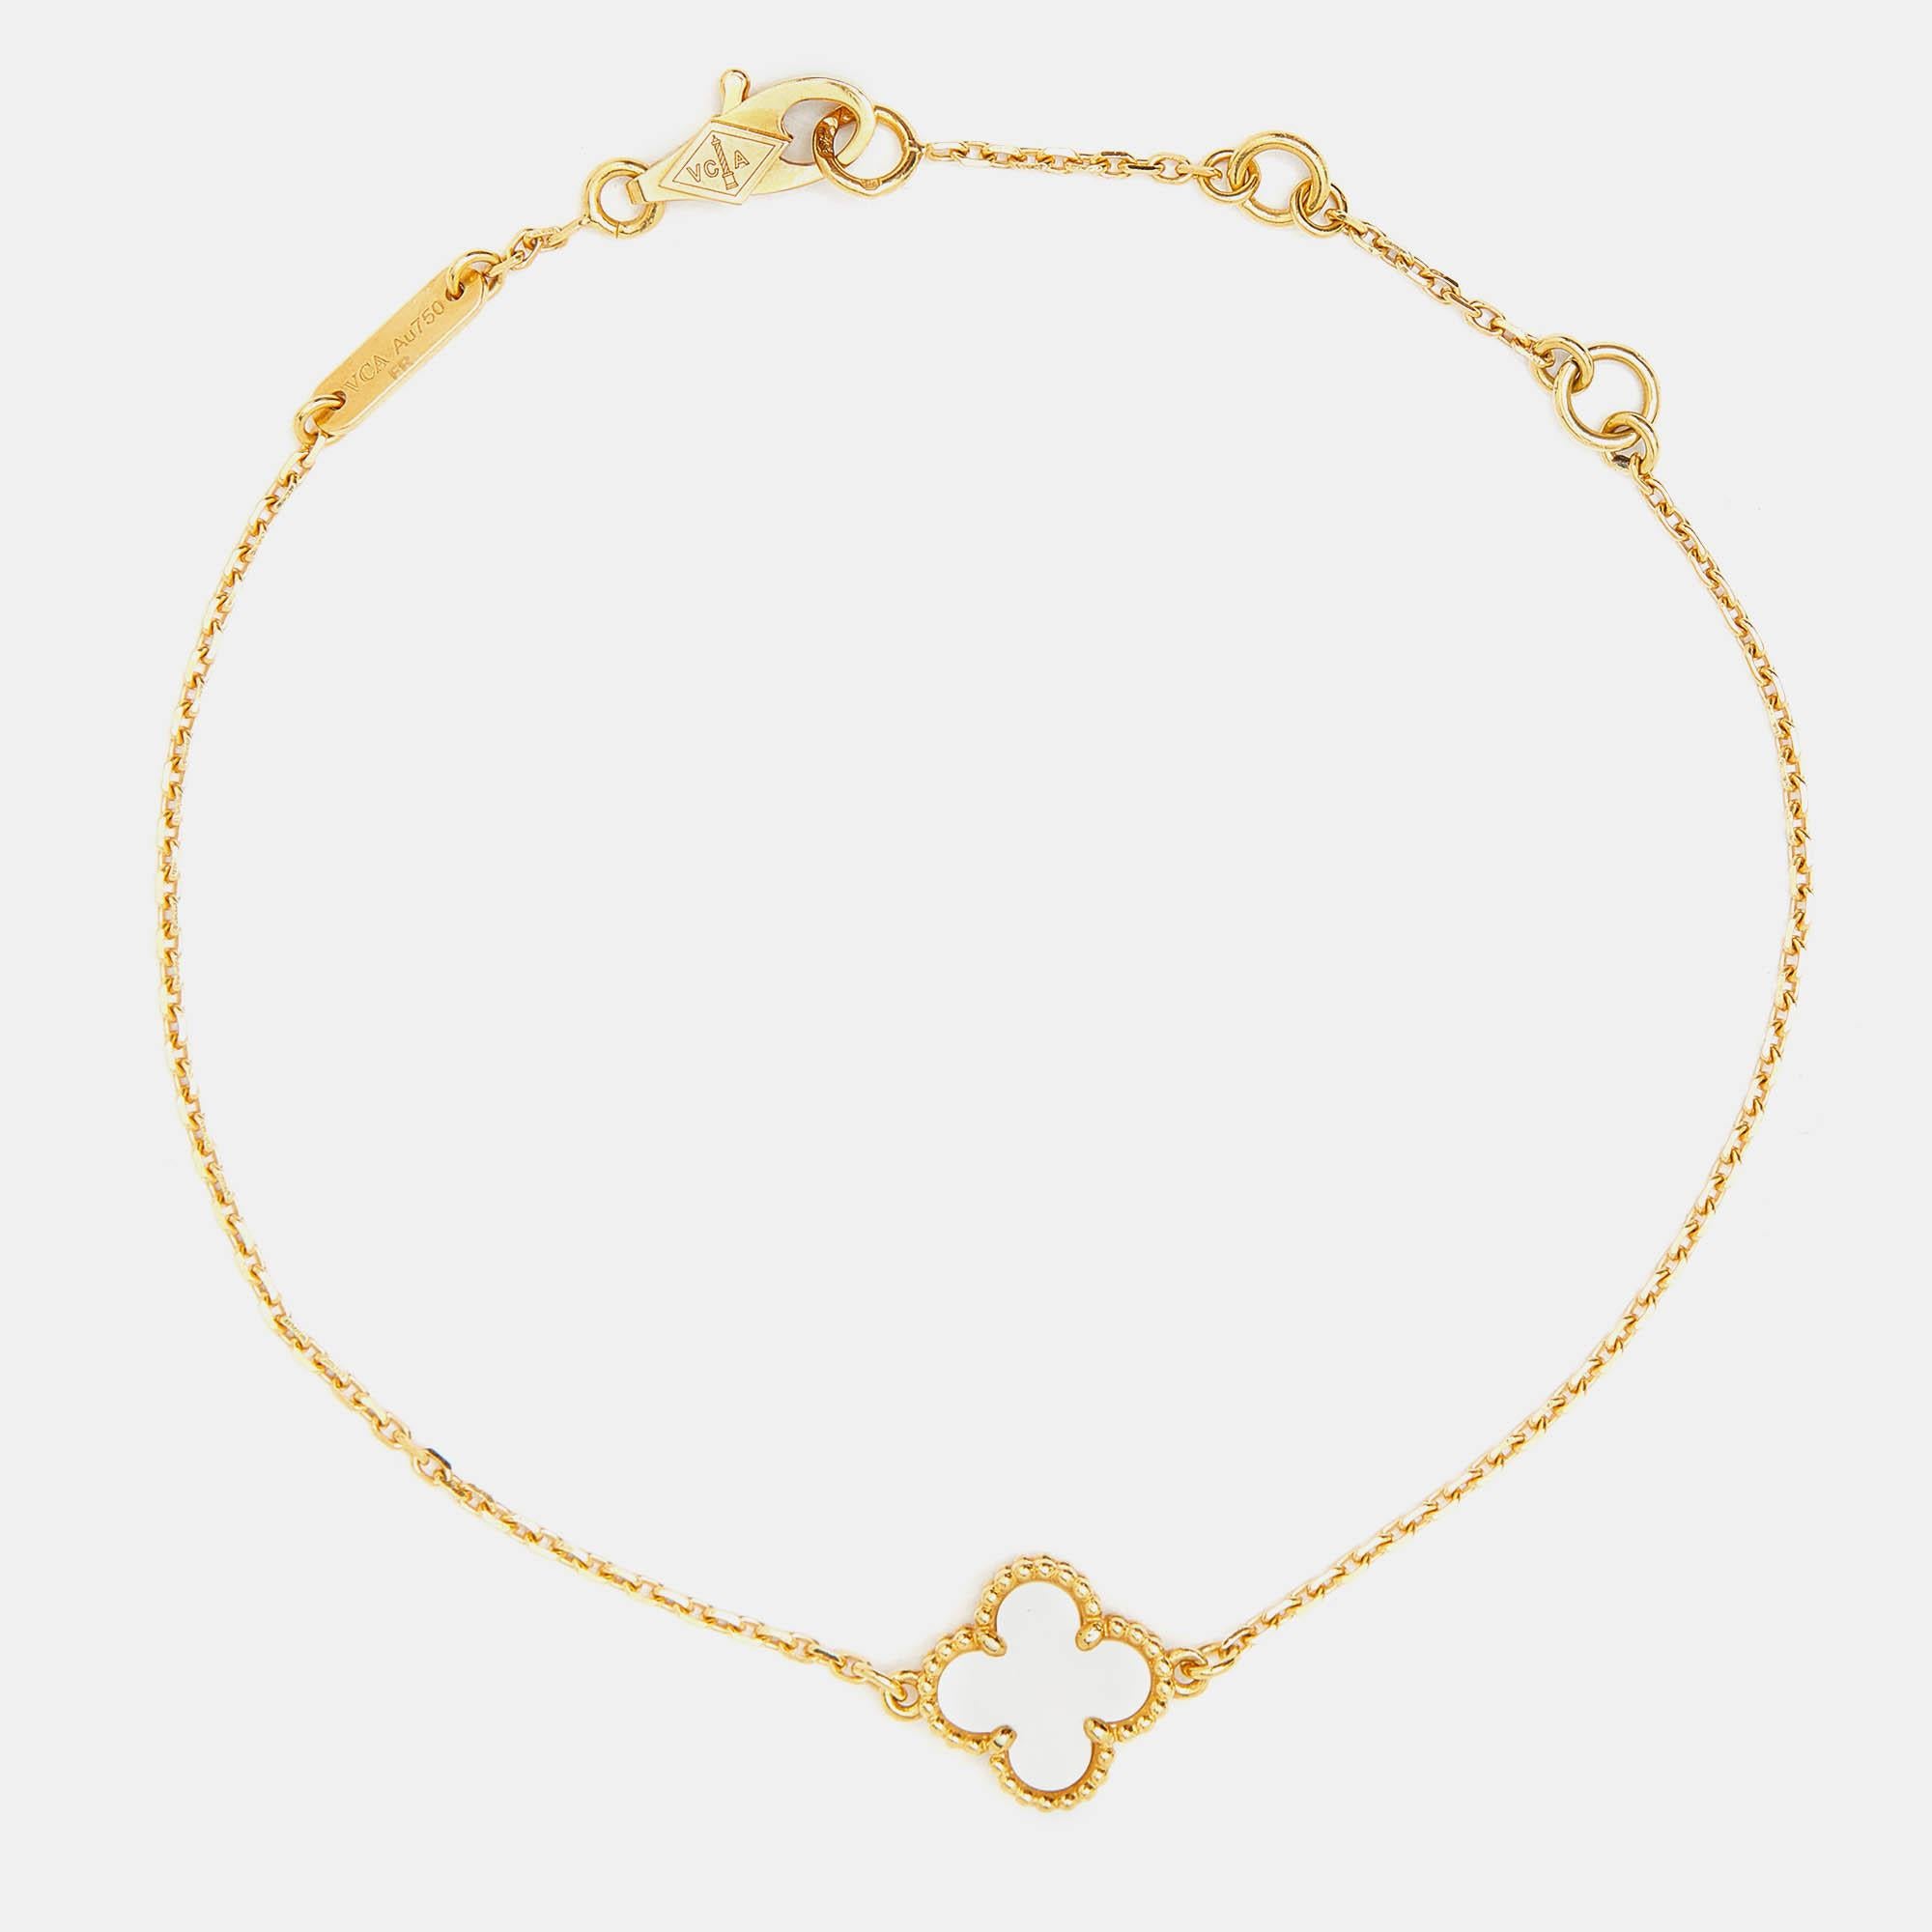 Investissez dans cet opulent bracelet Van Cleef & Arpels de la collection iconique Sweet Alhambra. Le pendentif Alhambra en or jaune 18 carats est serti d'une nacre et retenu par une chaîne. Un doux mélange de style minimaliste et d'élégance